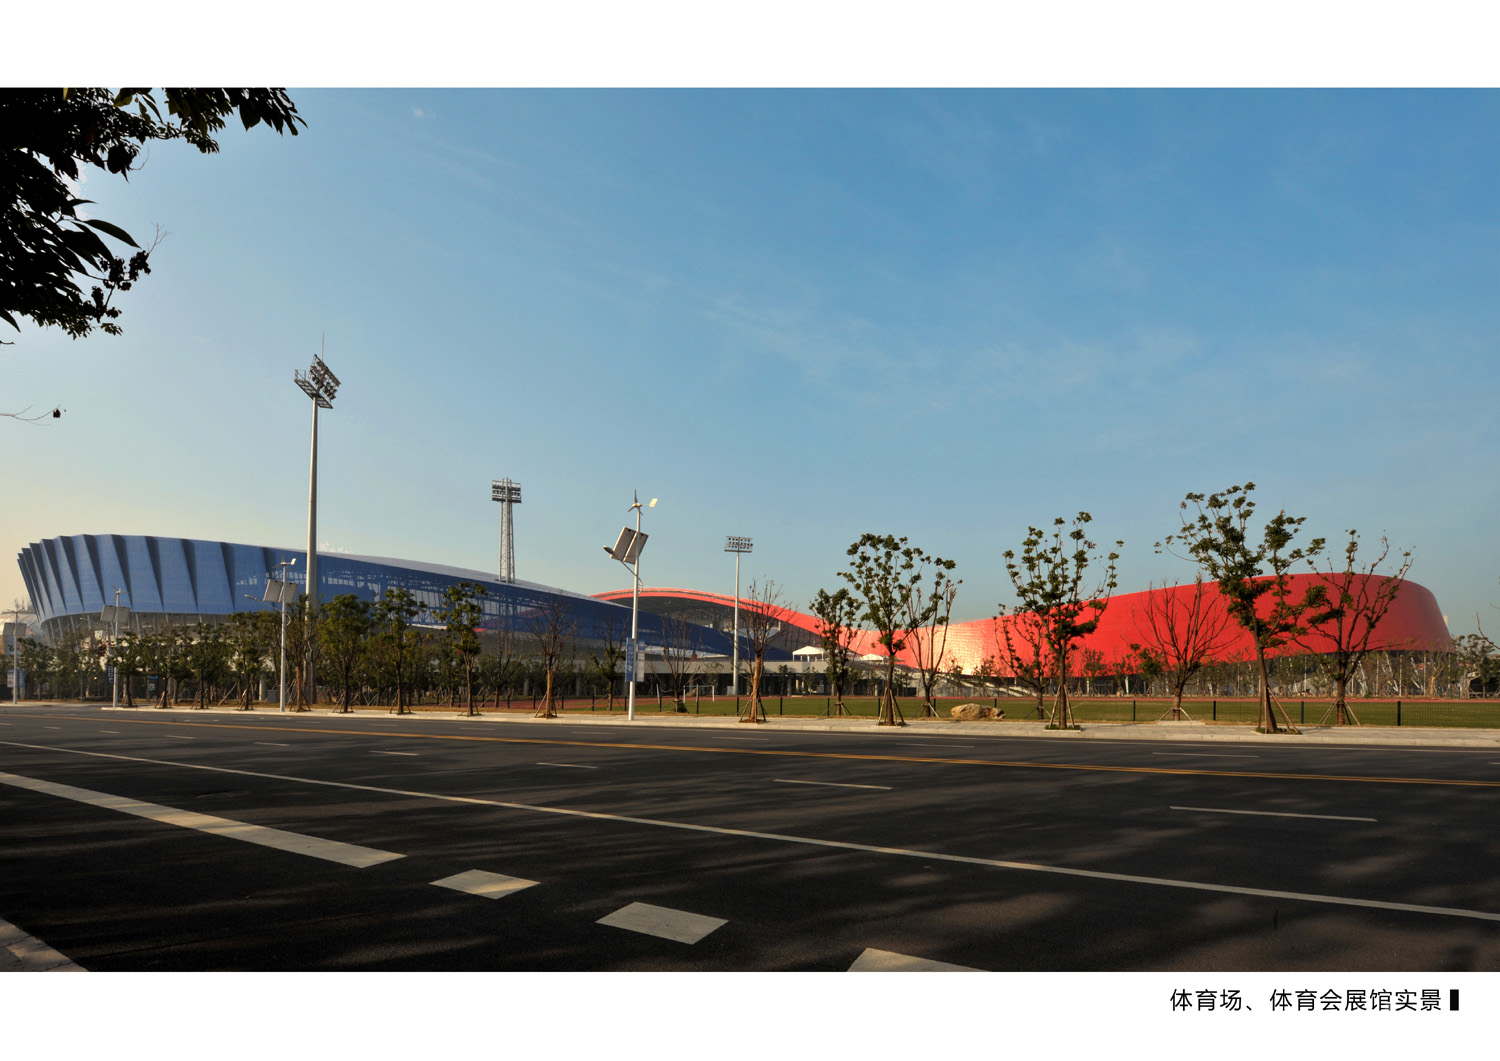 體育場與體育館一體設計